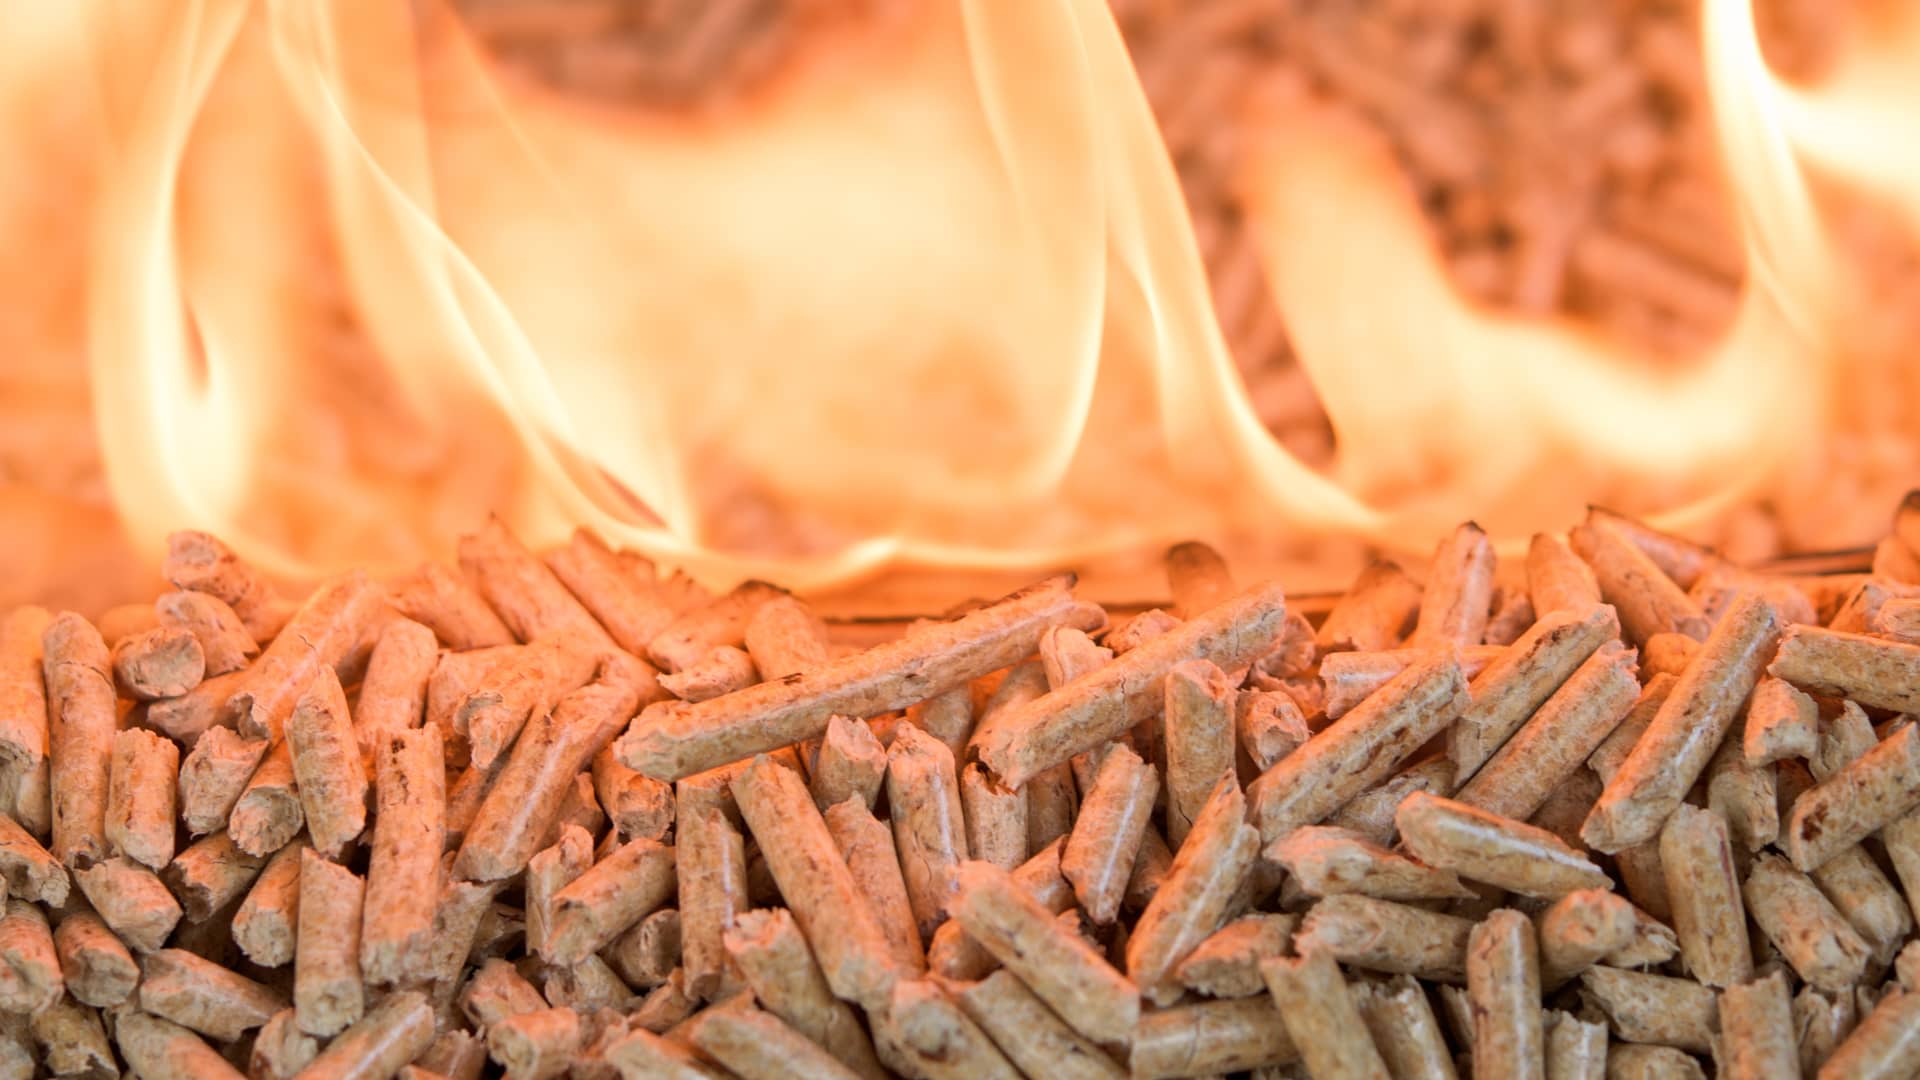 Pila de pellets ardiendo durante la gasificación para la obtención de gas de la biomasa